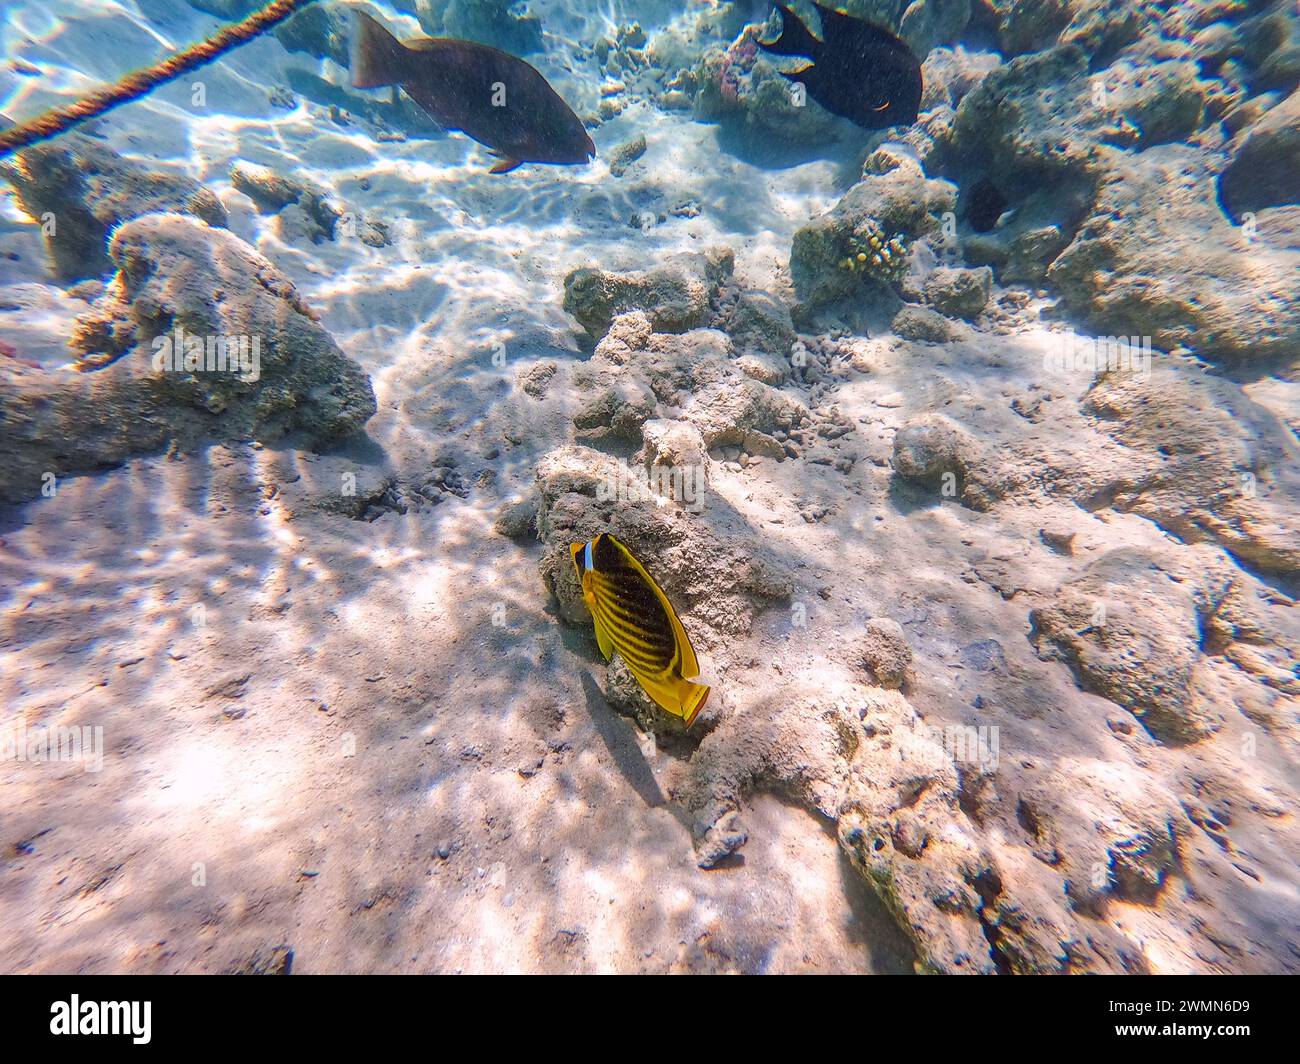 Le butterflyfish tropical Diagonal ou Raccoon connu sous le nom de chaetodon fasciatus sous l'eau au récif corallien. Vie sous-marine de récif avec coraux et tropica Banque D'Images